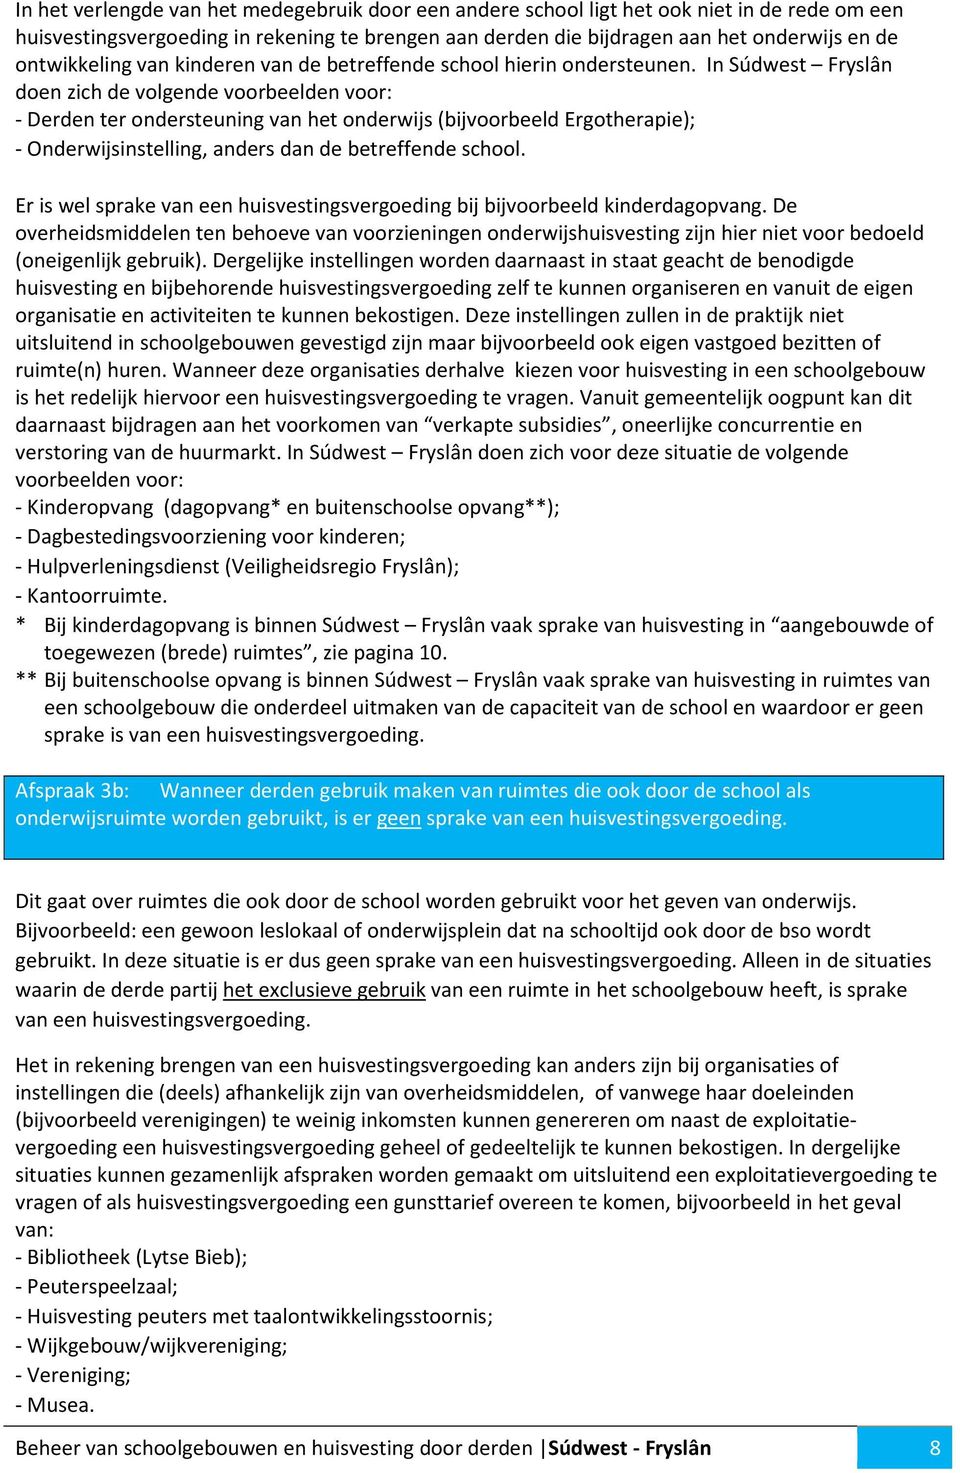 In Súdwest Fryslân doen zich de volgende voorbeelden voor: - Derden ter ondersteuning van het onderwijs (bijvoorbeeld Ergotherapie); - Onderwijsinstelling, anders dan de betreffende school.